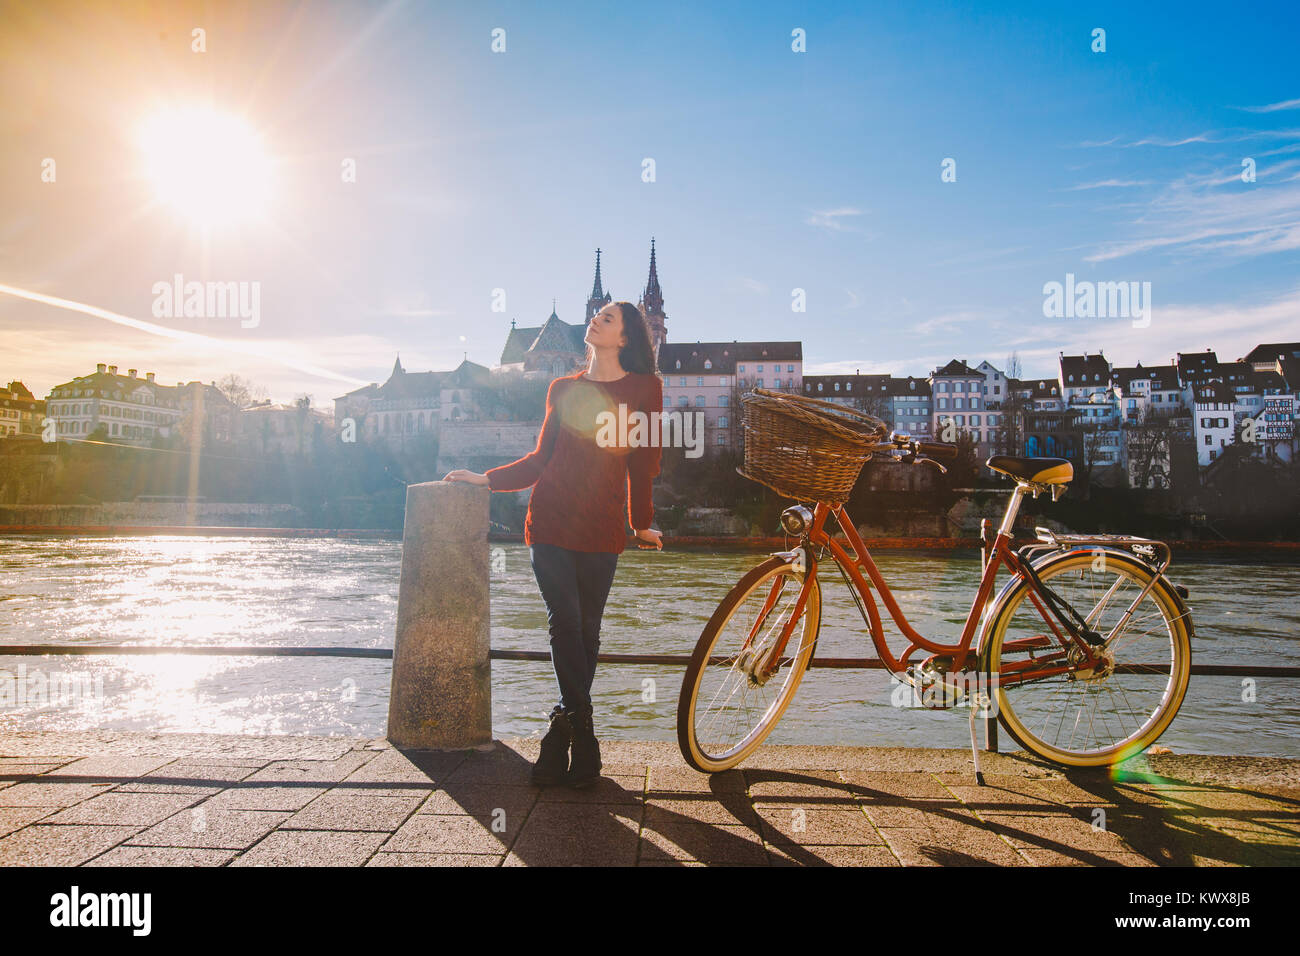 Ein schönes junges Mädchen steht auf dem Bahndamm in der Nähe einer Stadt  Fahrrad mit einem roten Korb in der Schweiz hat die Stadt Basel weit  entfernt ist Dom und Alte Hou